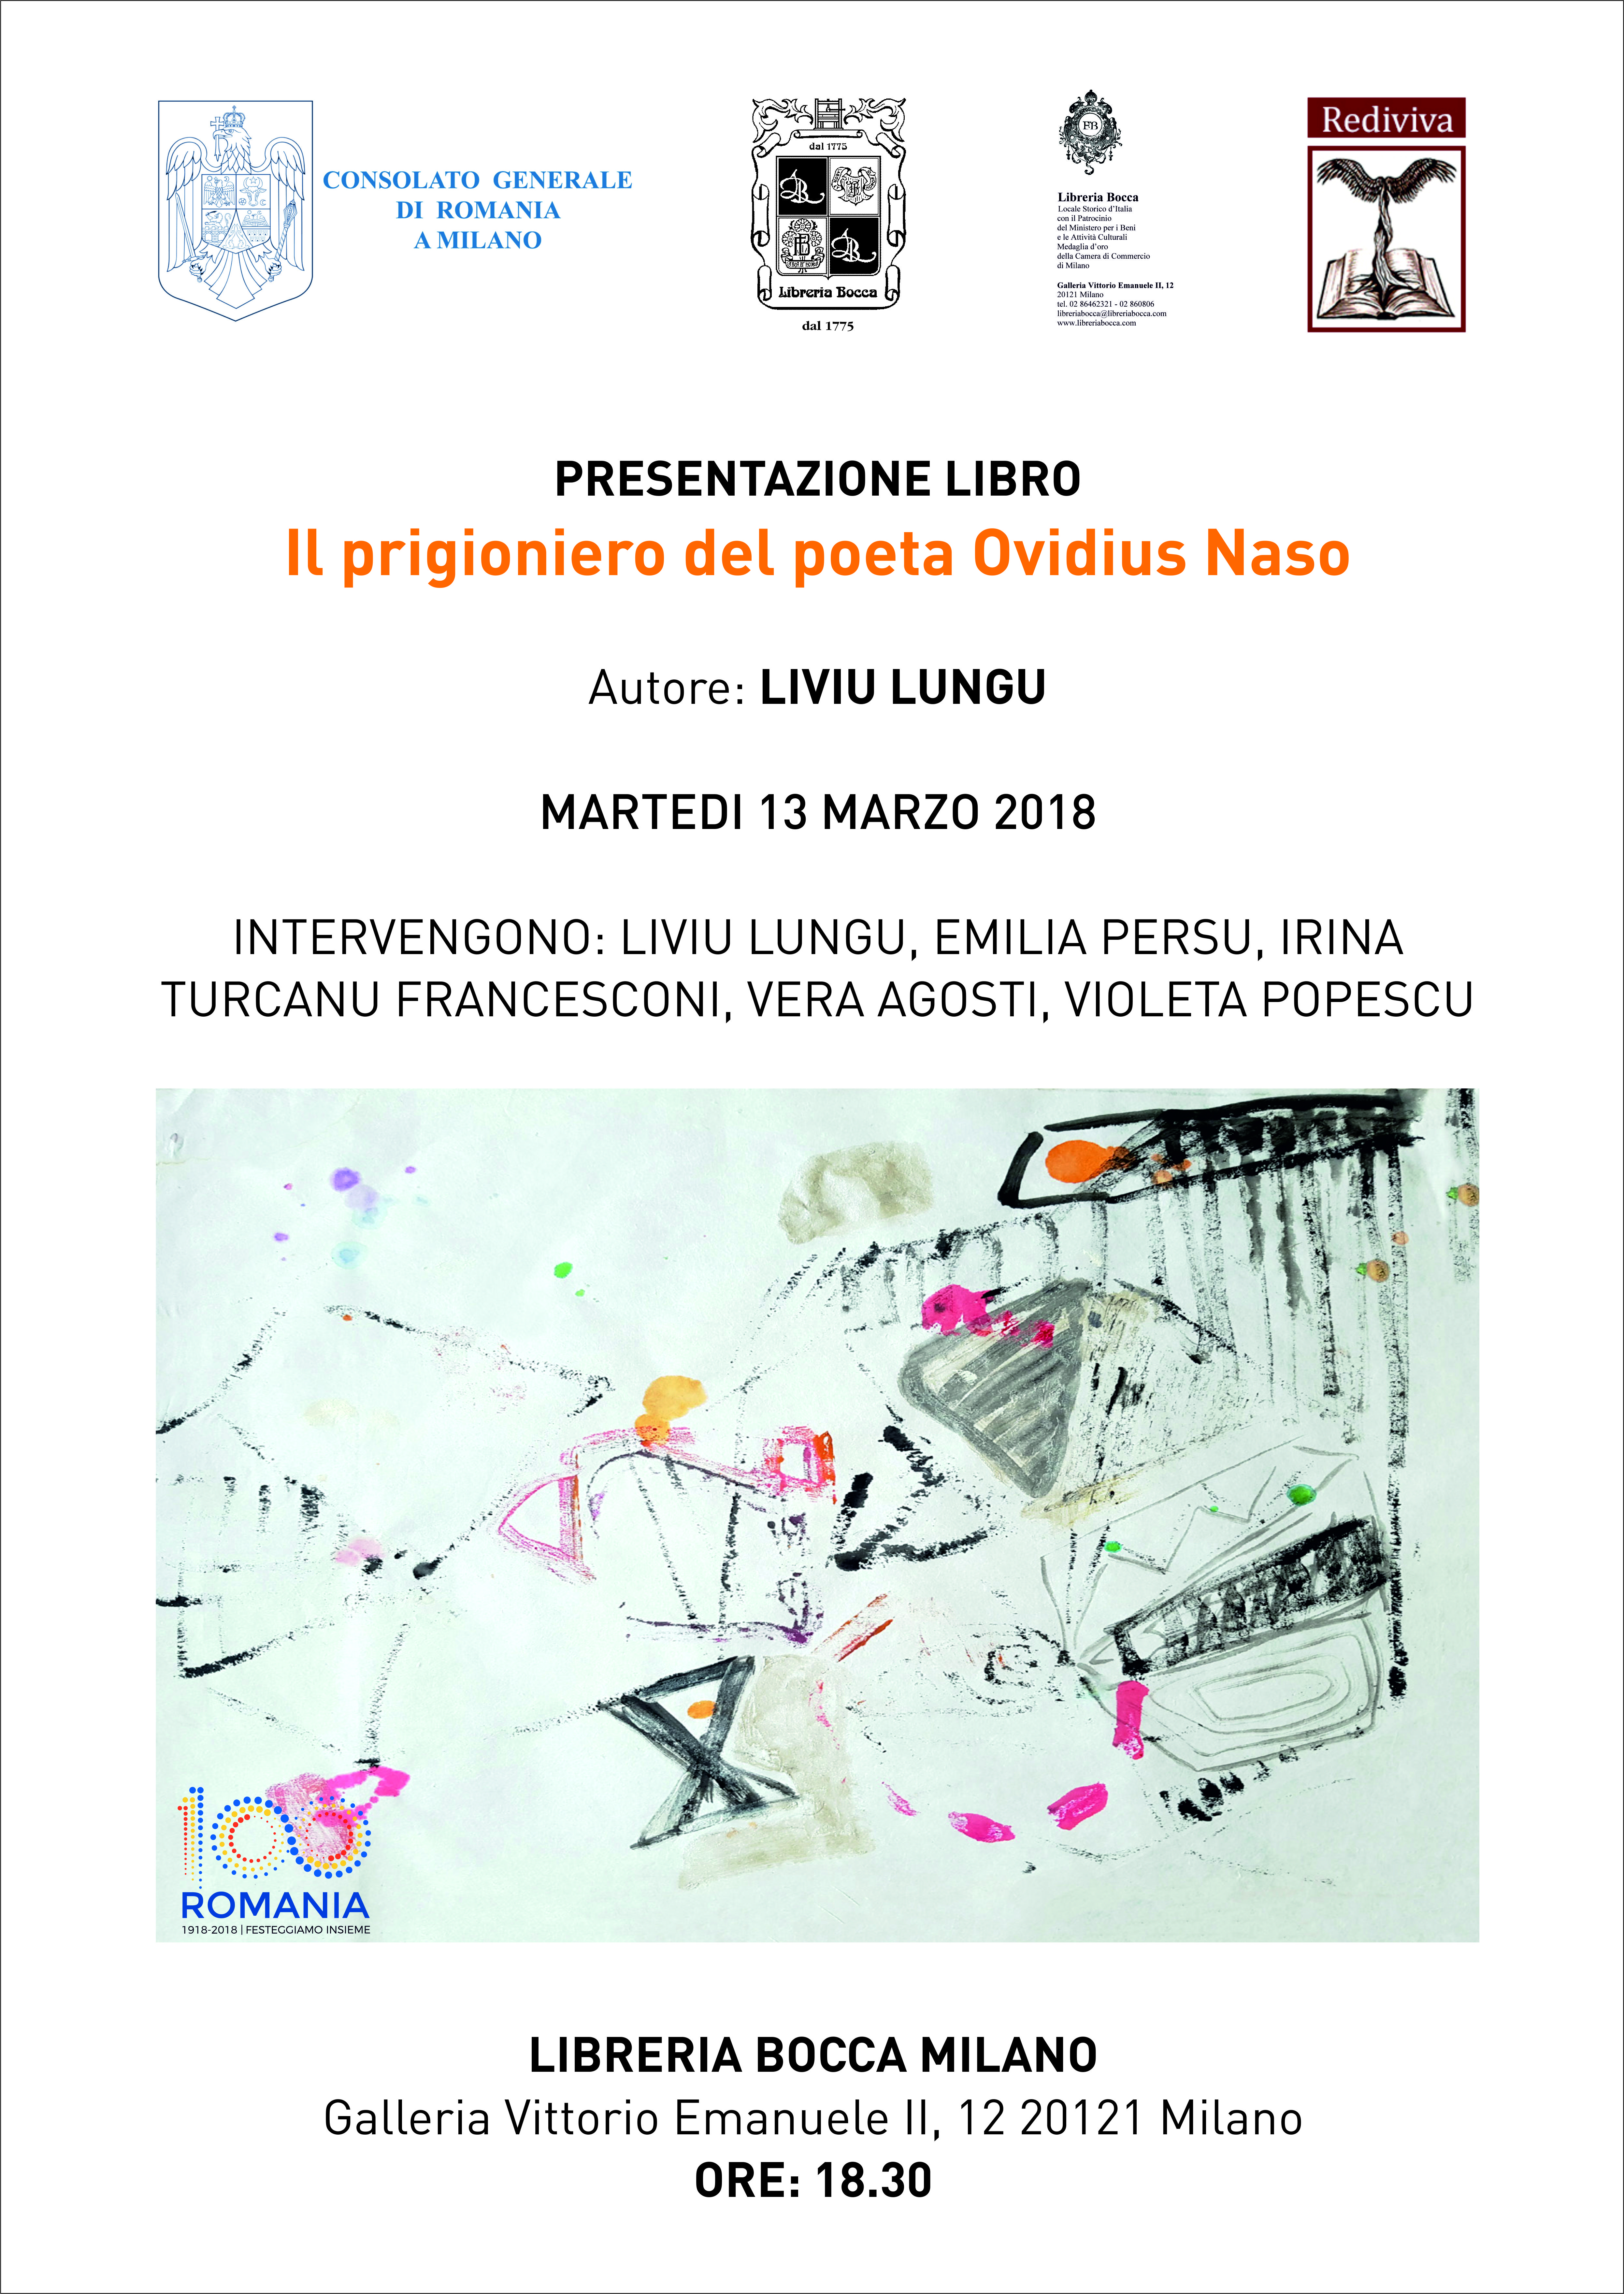 Libreria BOCCA di Milano ospita la presentazione del libro: “Il prigioniero del poeta Ovidius Naso” di Liviu LUNGU, ed. Rediviva